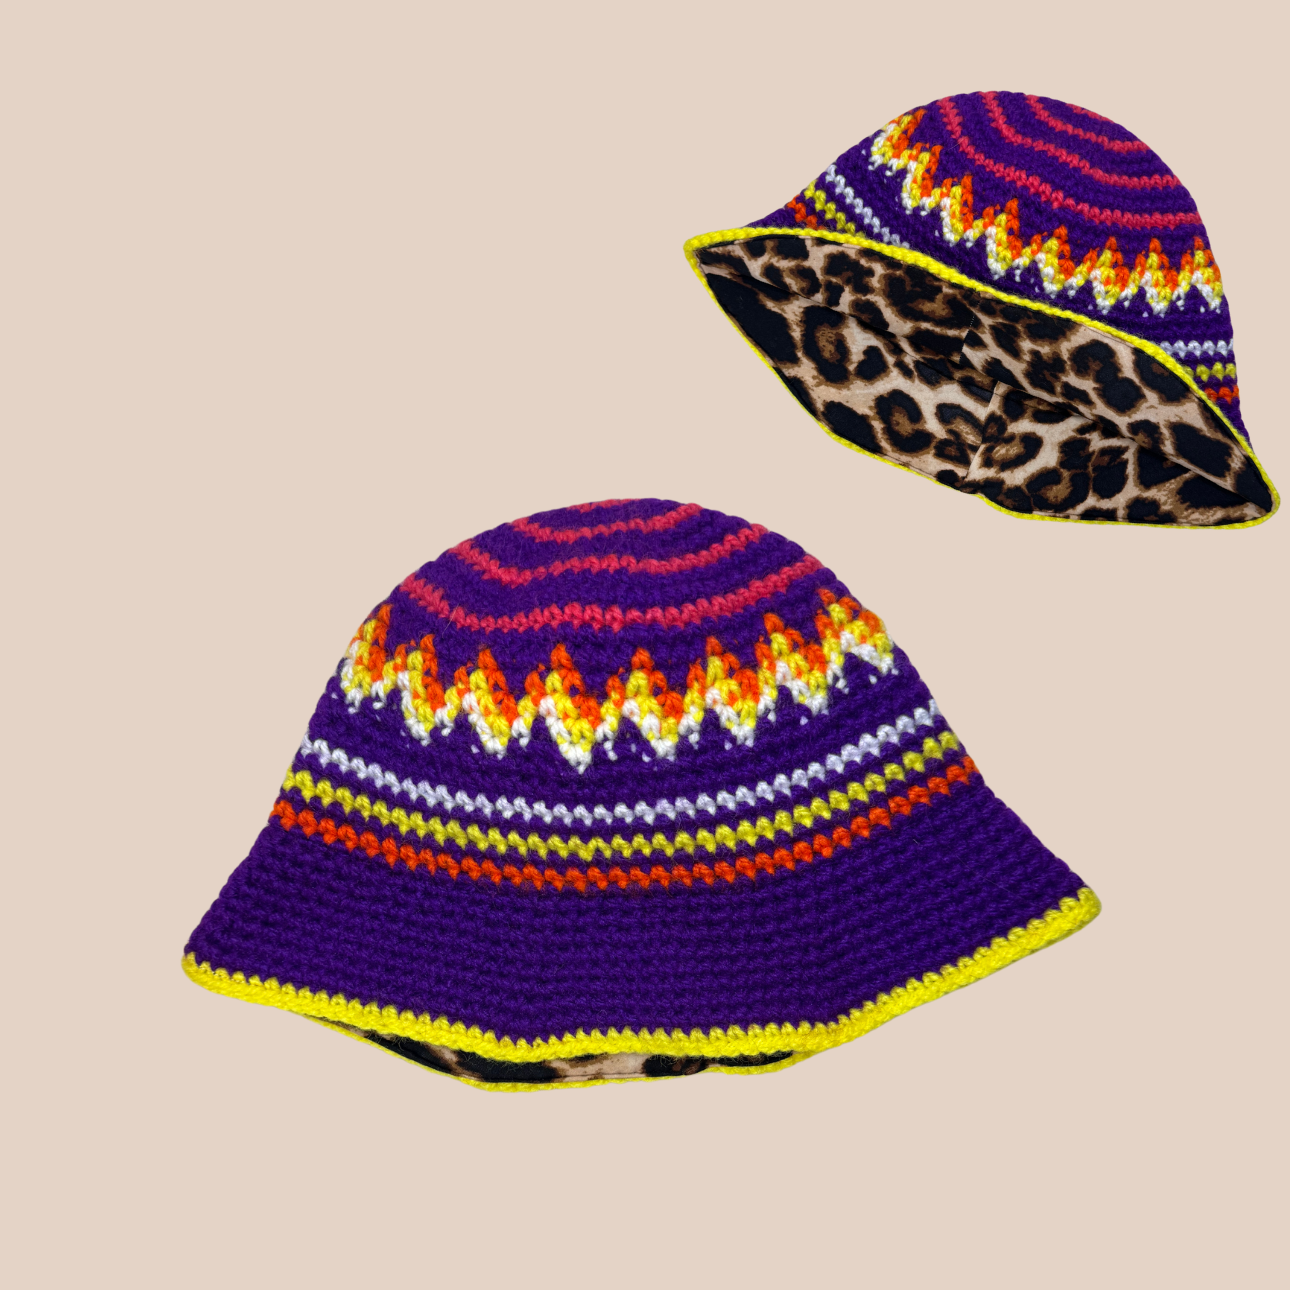 Un bucket hat crocheté en laine et acrylique, arborant des couleurs vives et audacieuses, doublure léopard